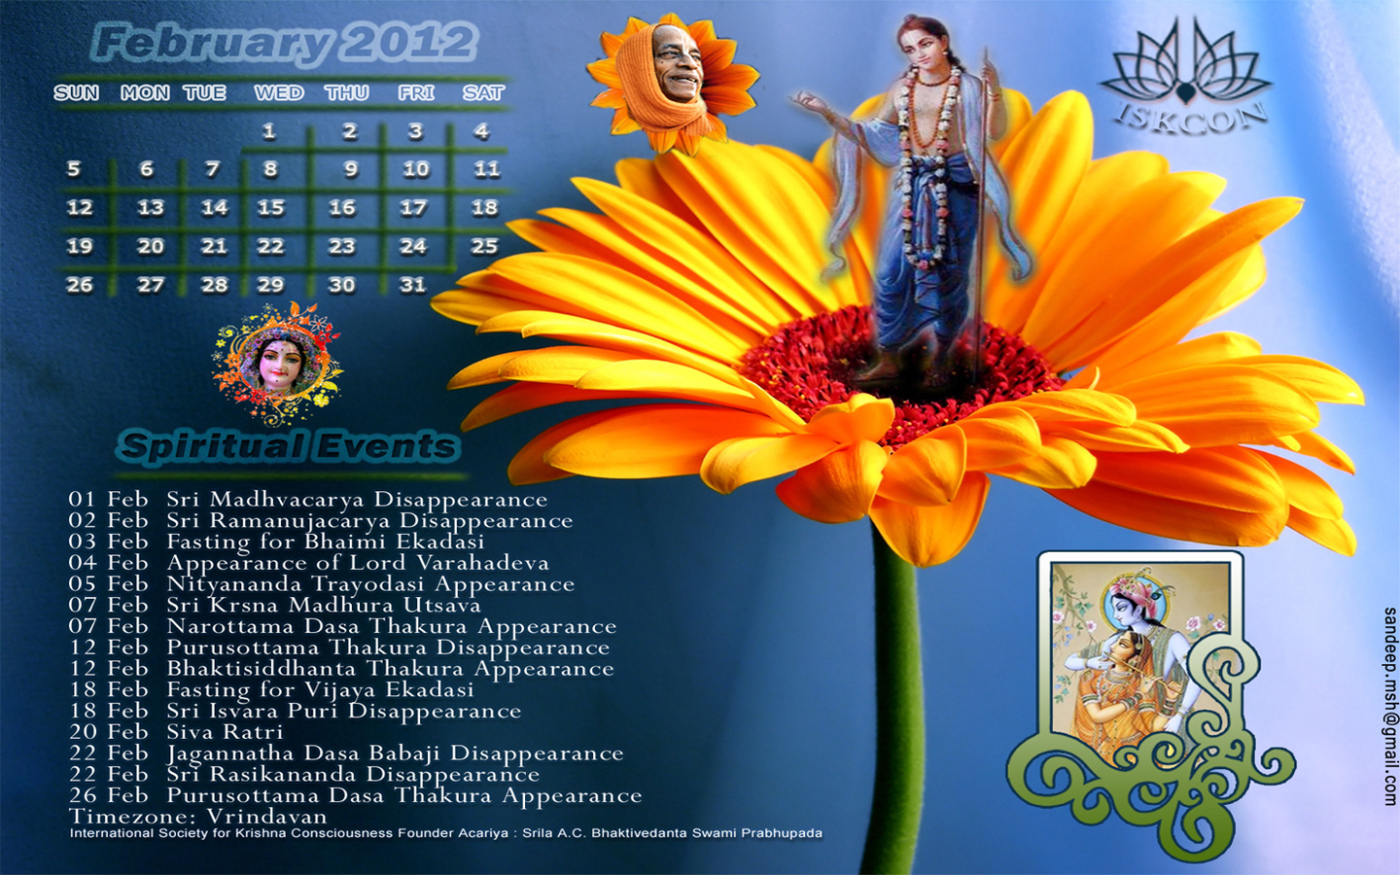 nombre de pantalla prashant,calendario,flor,planta,flor silvestre,publicidad